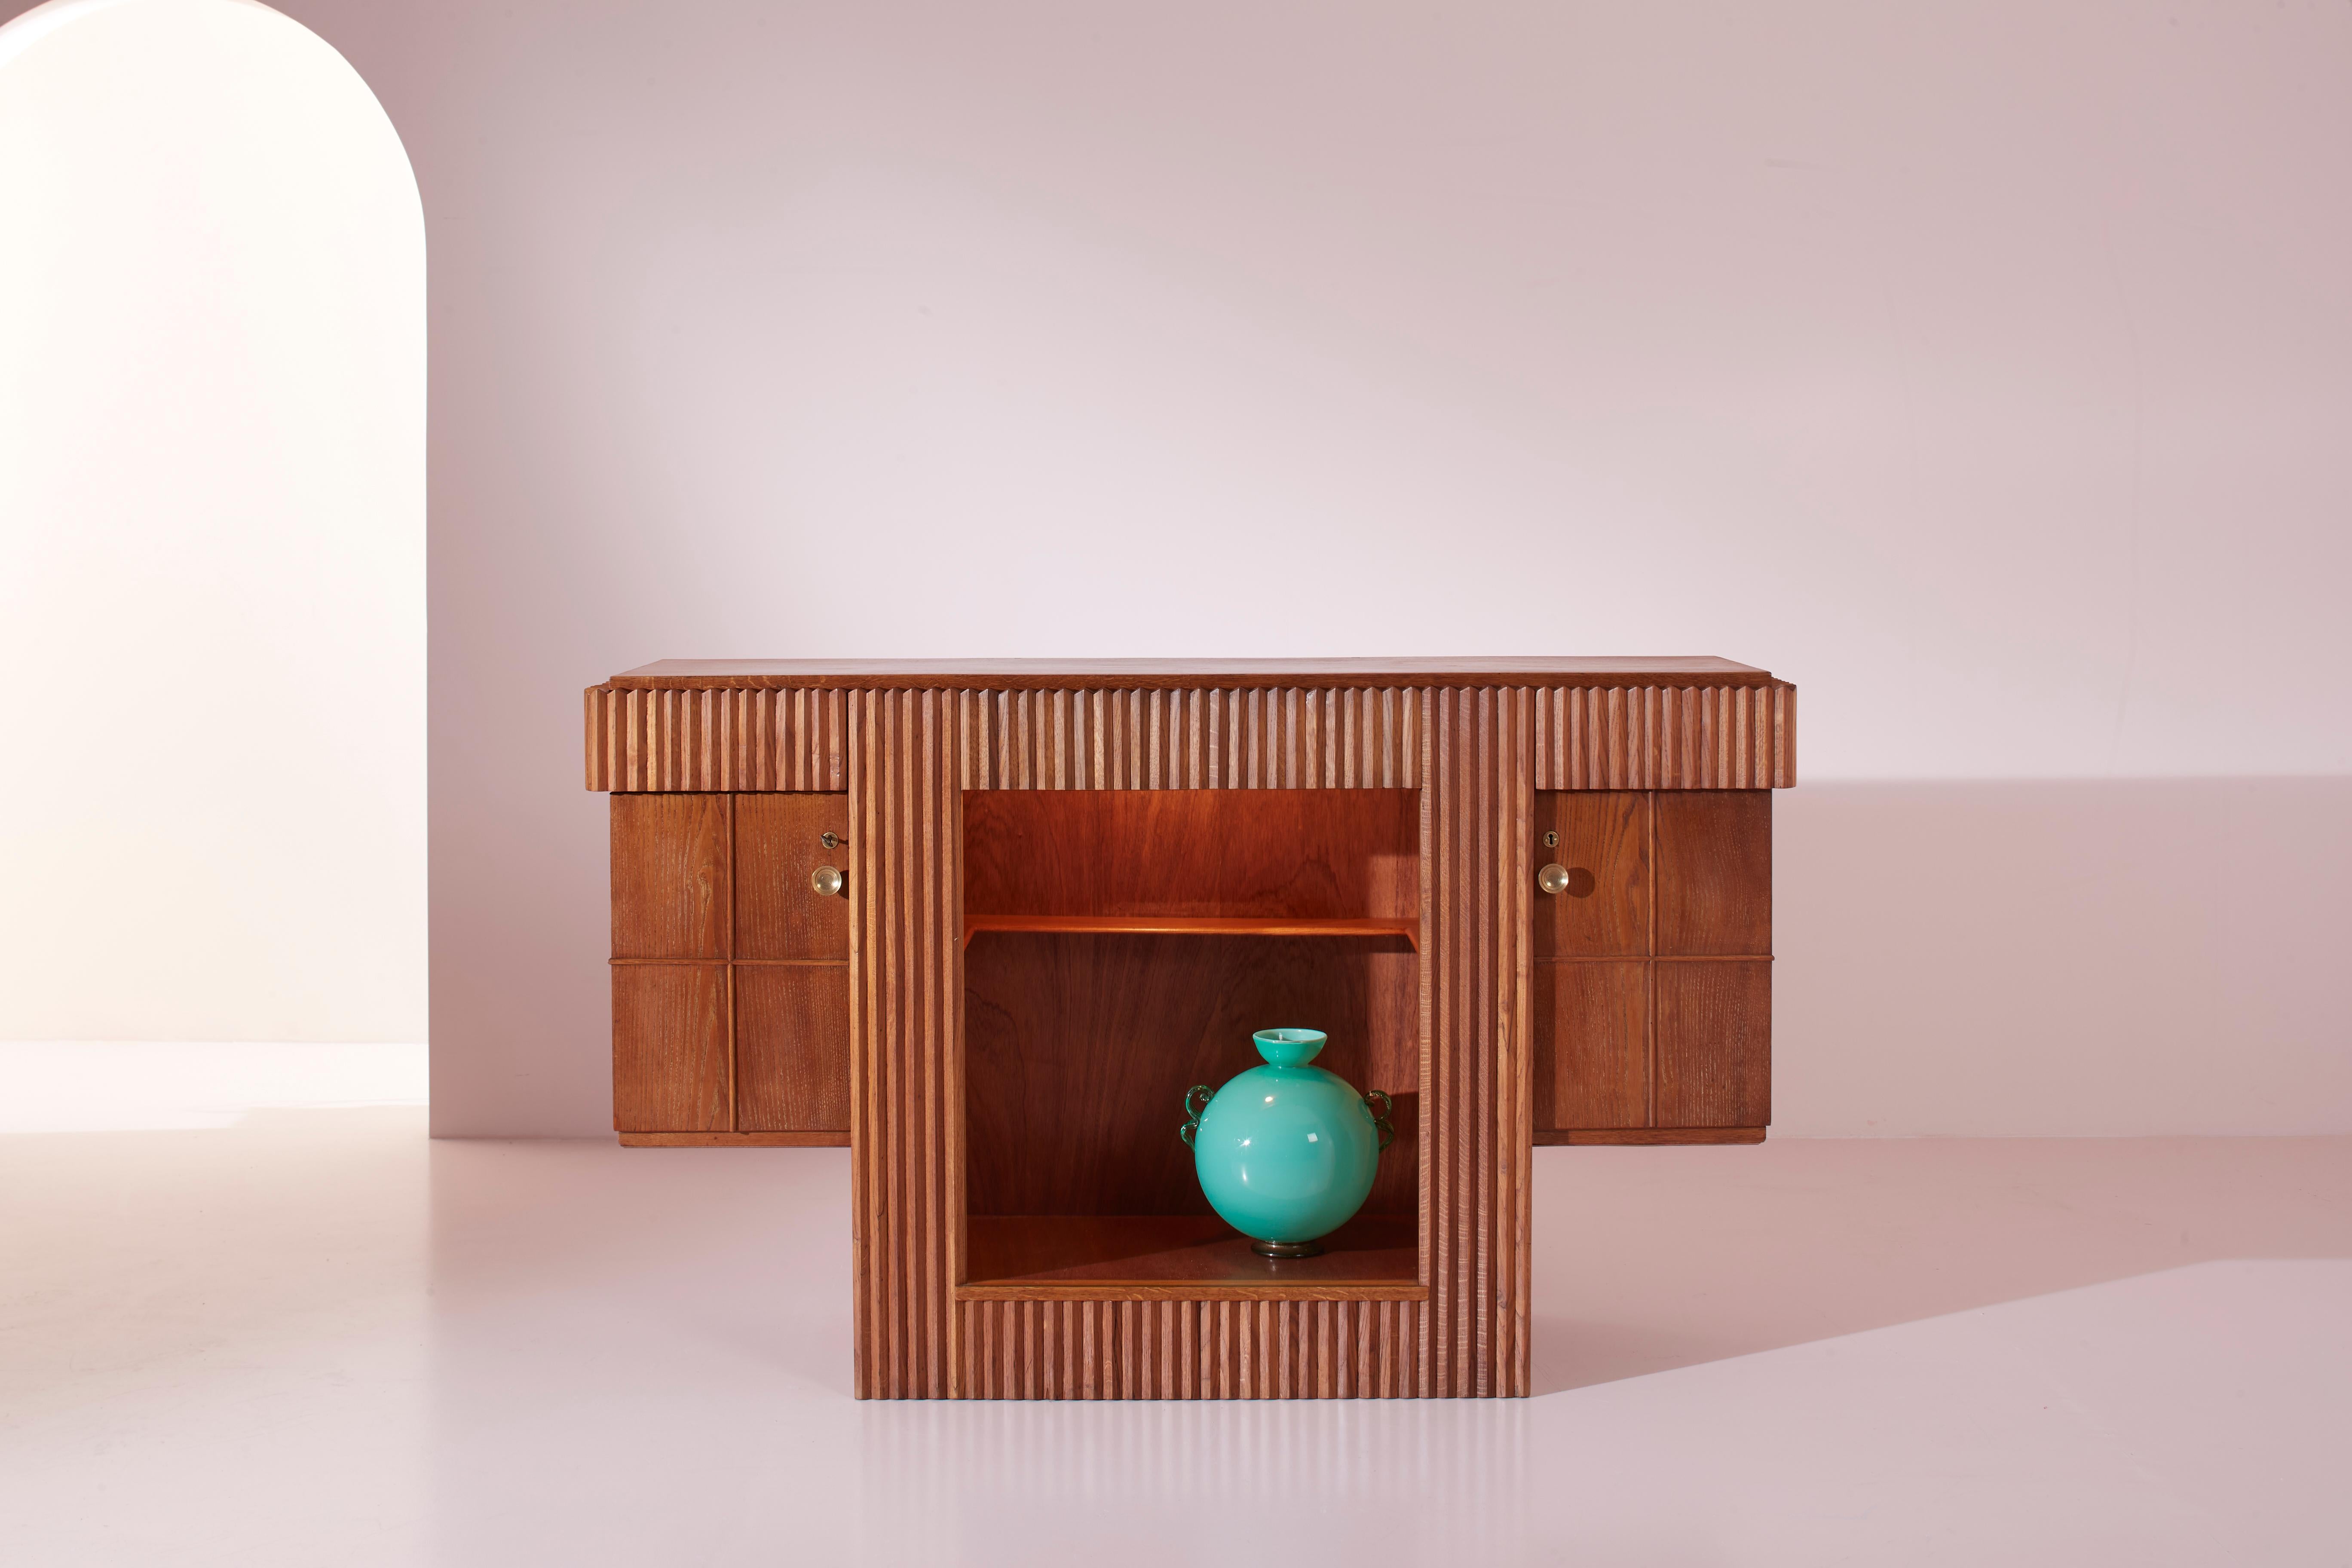 Barschrank mit Regalen und Türen aus Eichenholz, italienische Handwerkskunst aus den 1940er Jahren, entworfen von Gio Ponti.

Dieses Eichenholzmöbel ist die perfekte Ergänzung für einen Empfangsbereich oder eine Lounge, die der Gastfreundschaft